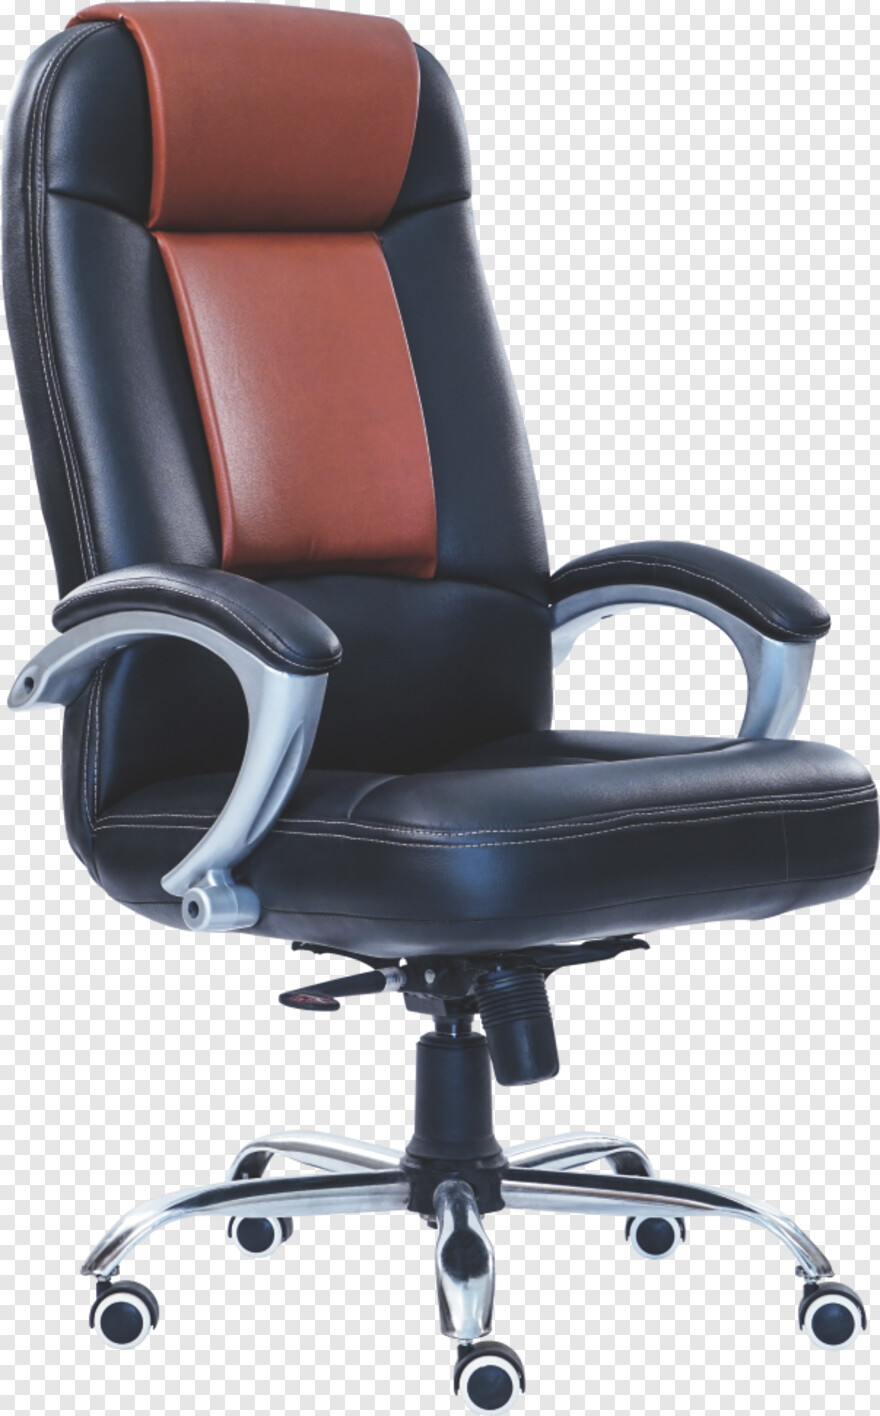 chair # 450904